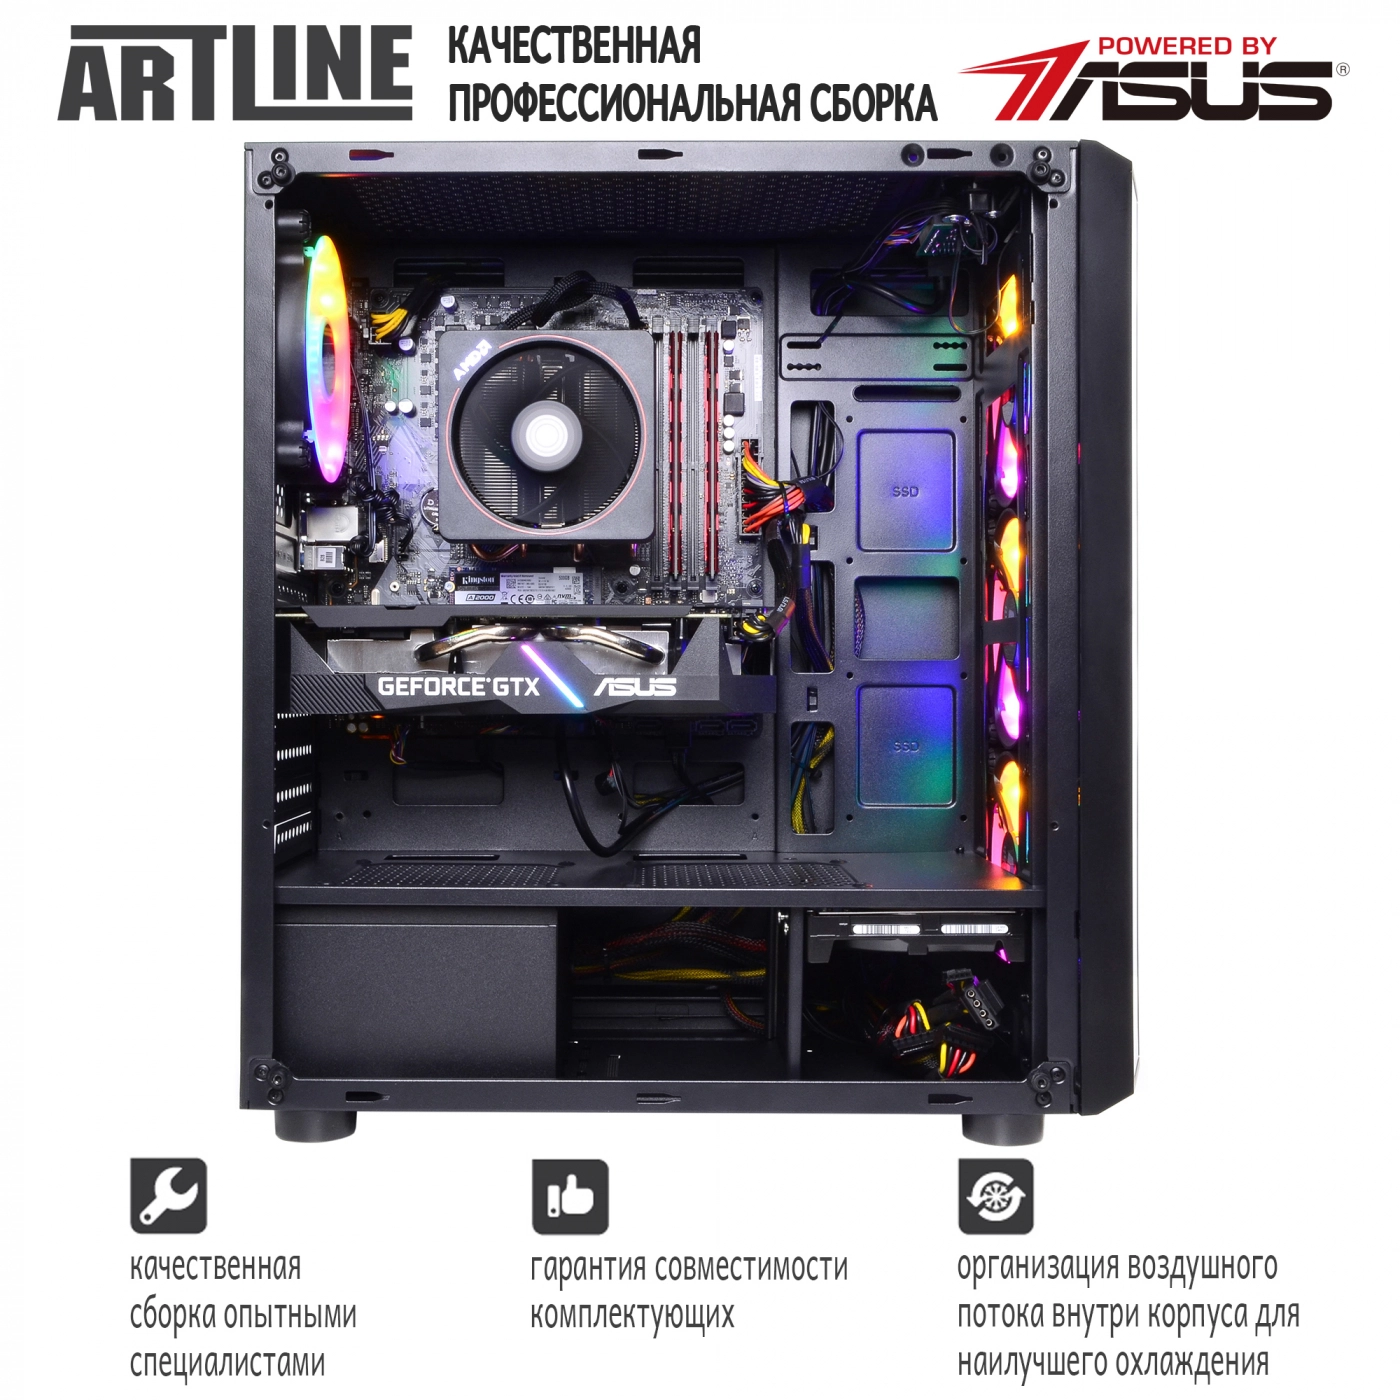 Купить Компьютер ARTLINE Gaming X84v01 - фото 9